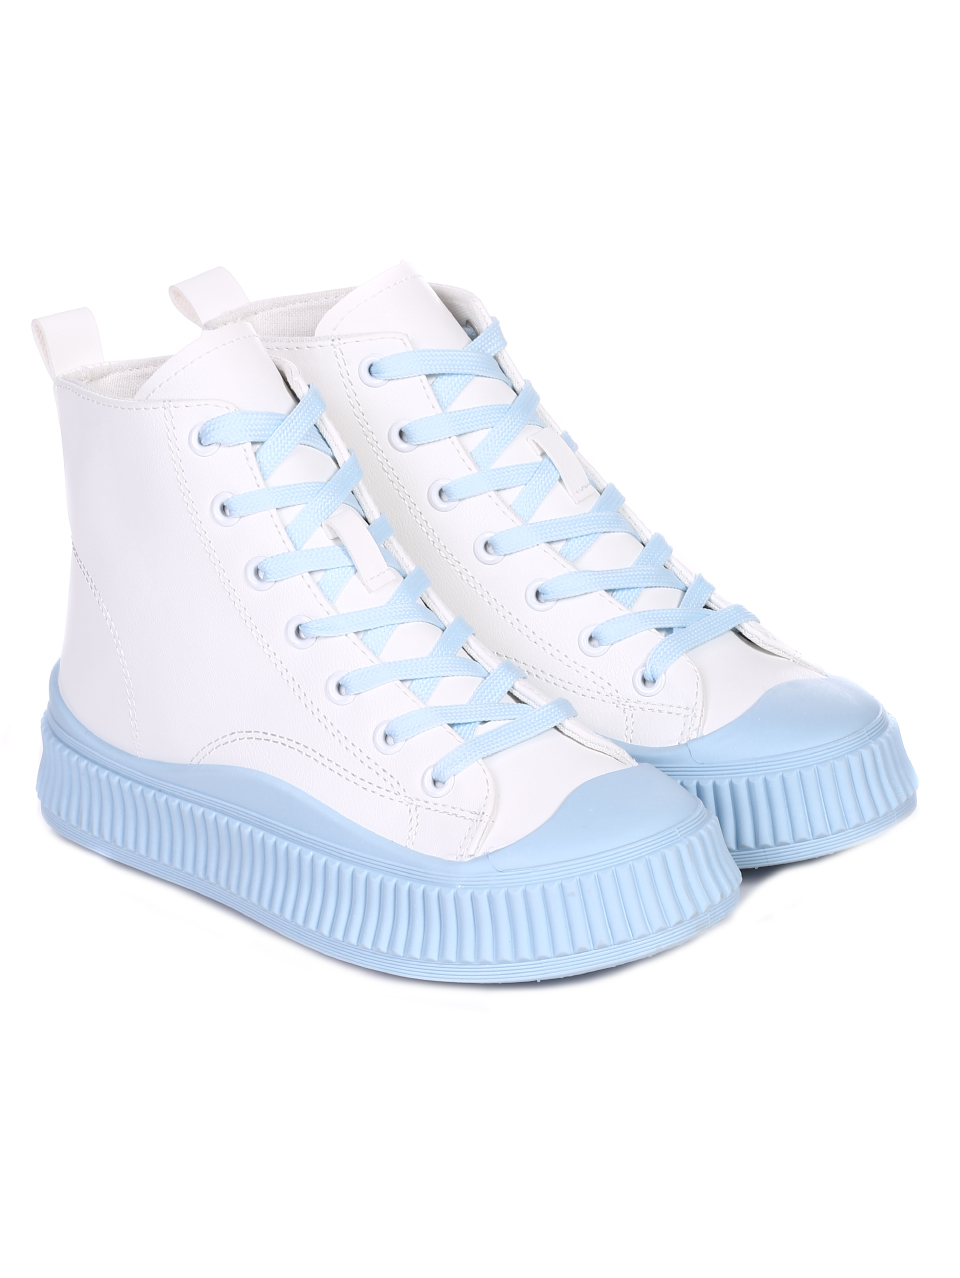 Ежедневни дамски обувки в бяло и синьо 2U-22032 white/blue